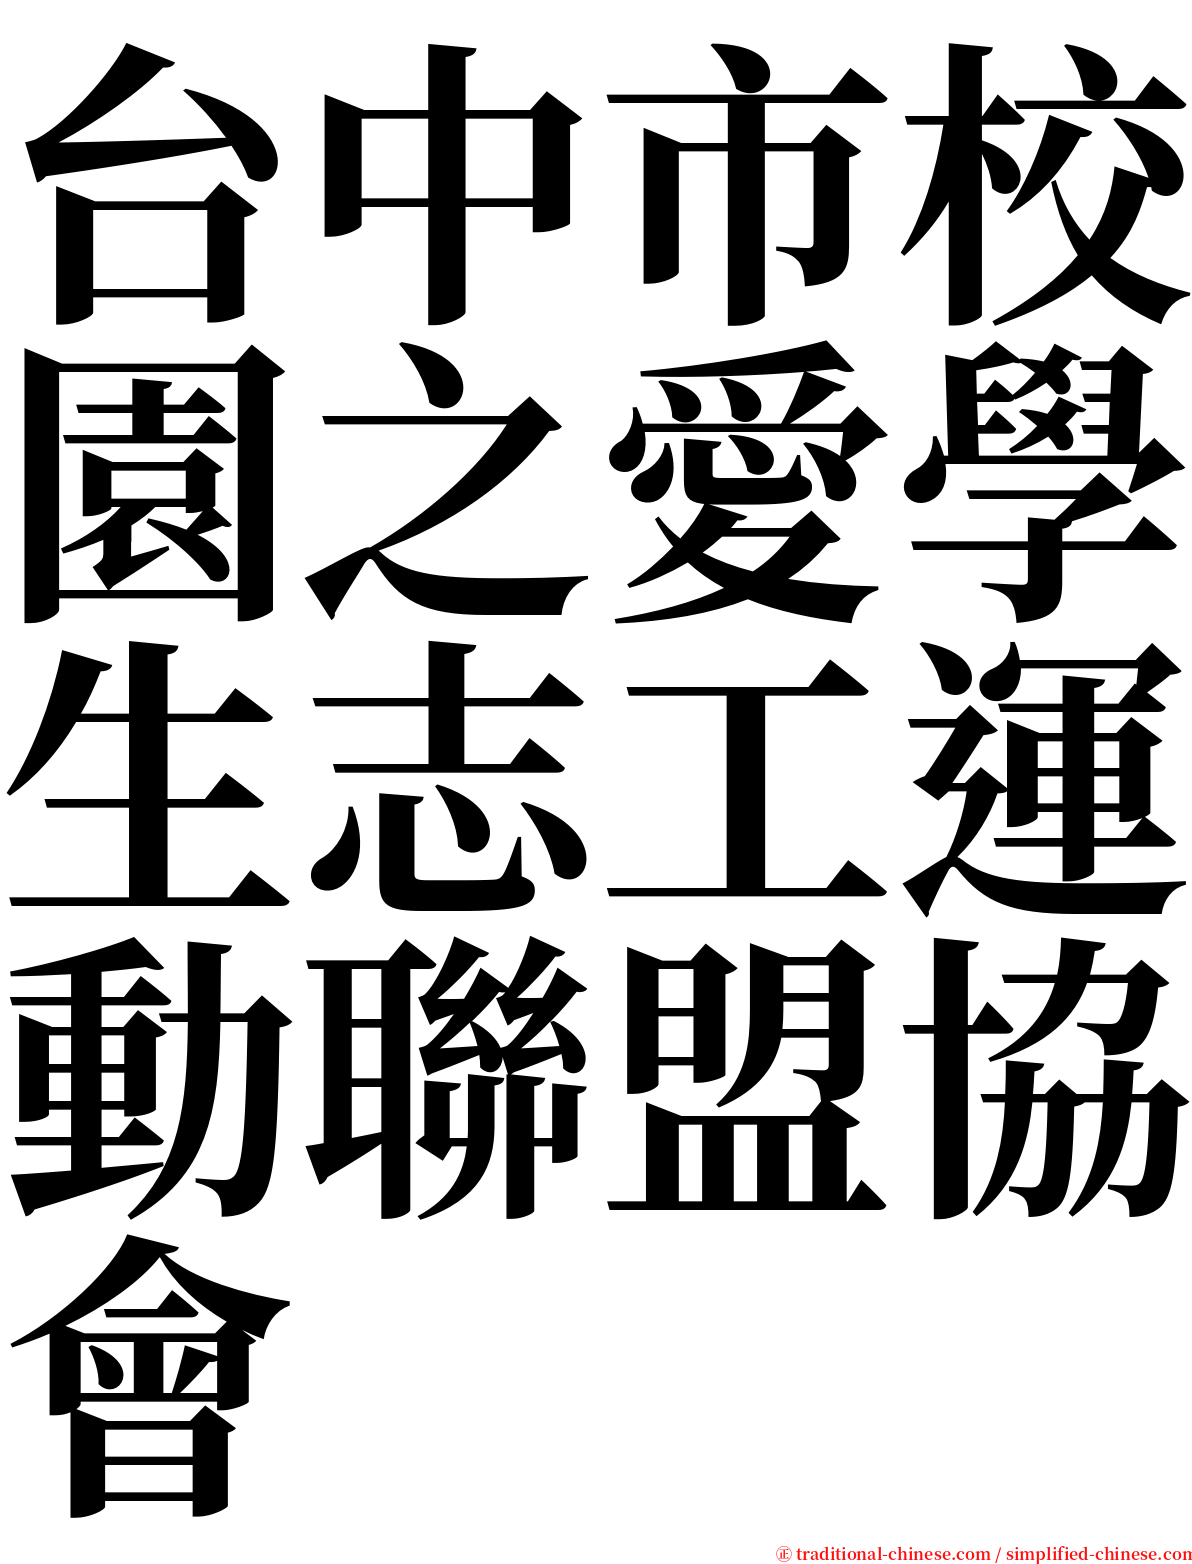 台中市校園之愛學生志工運動聯盟協會 serif font